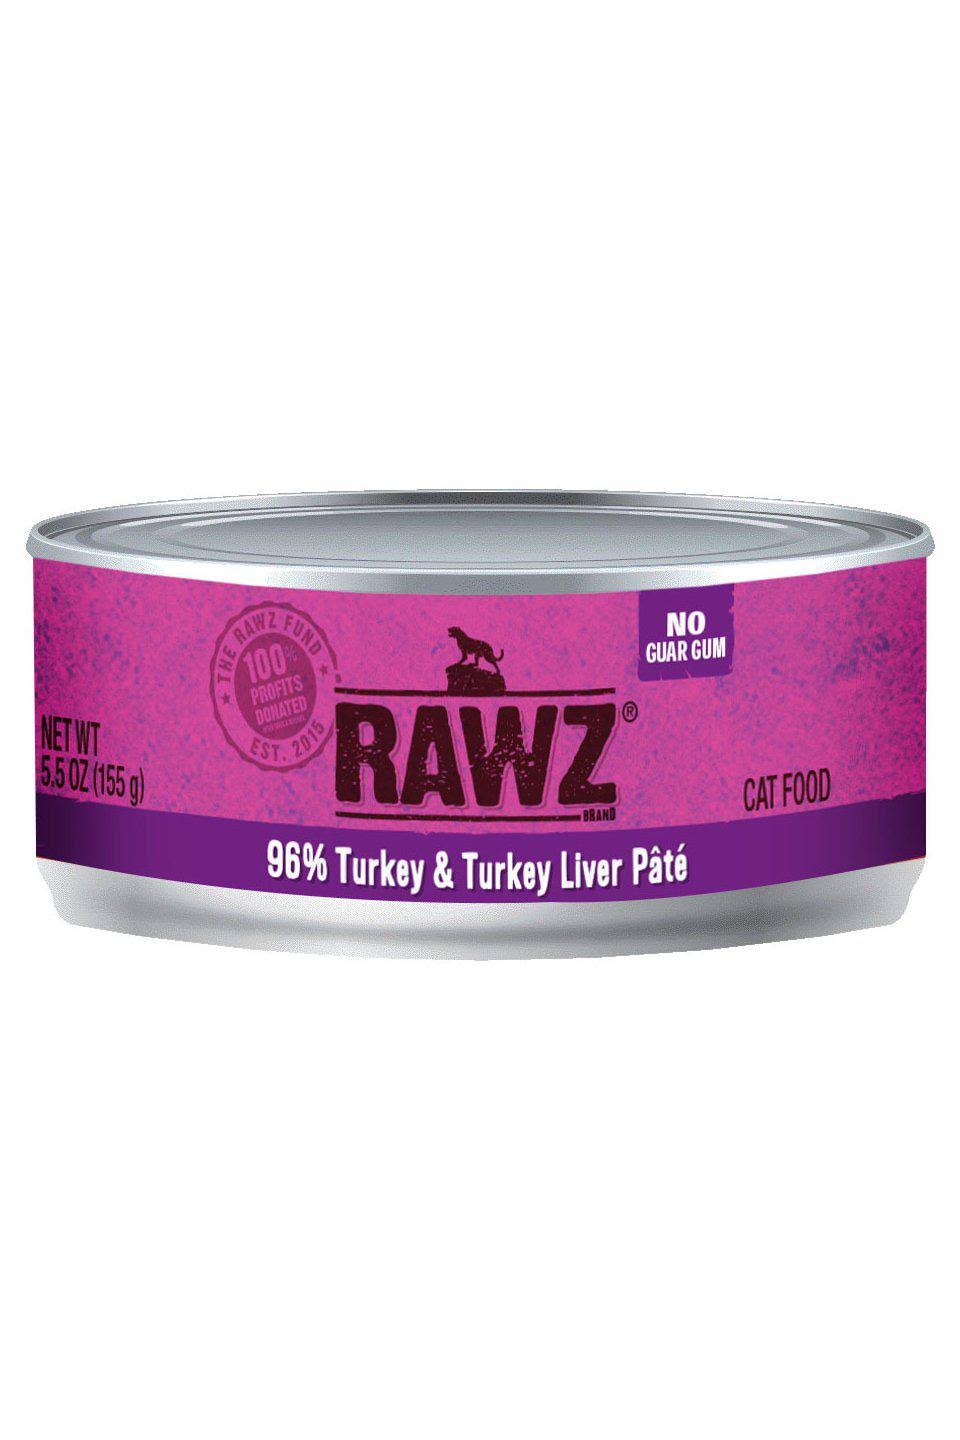 RAWZ Cat 96% Turkey & Turkey Liver, 5.5-oz